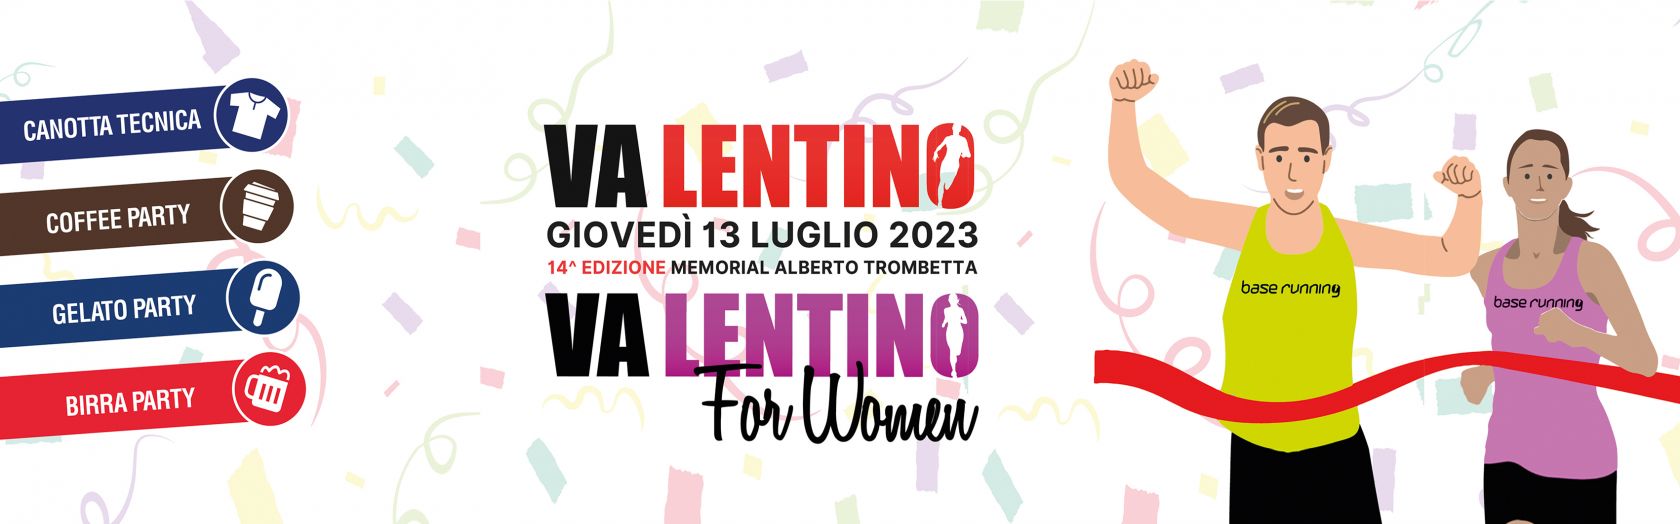 Va Lentino e Va Lentino for Woman